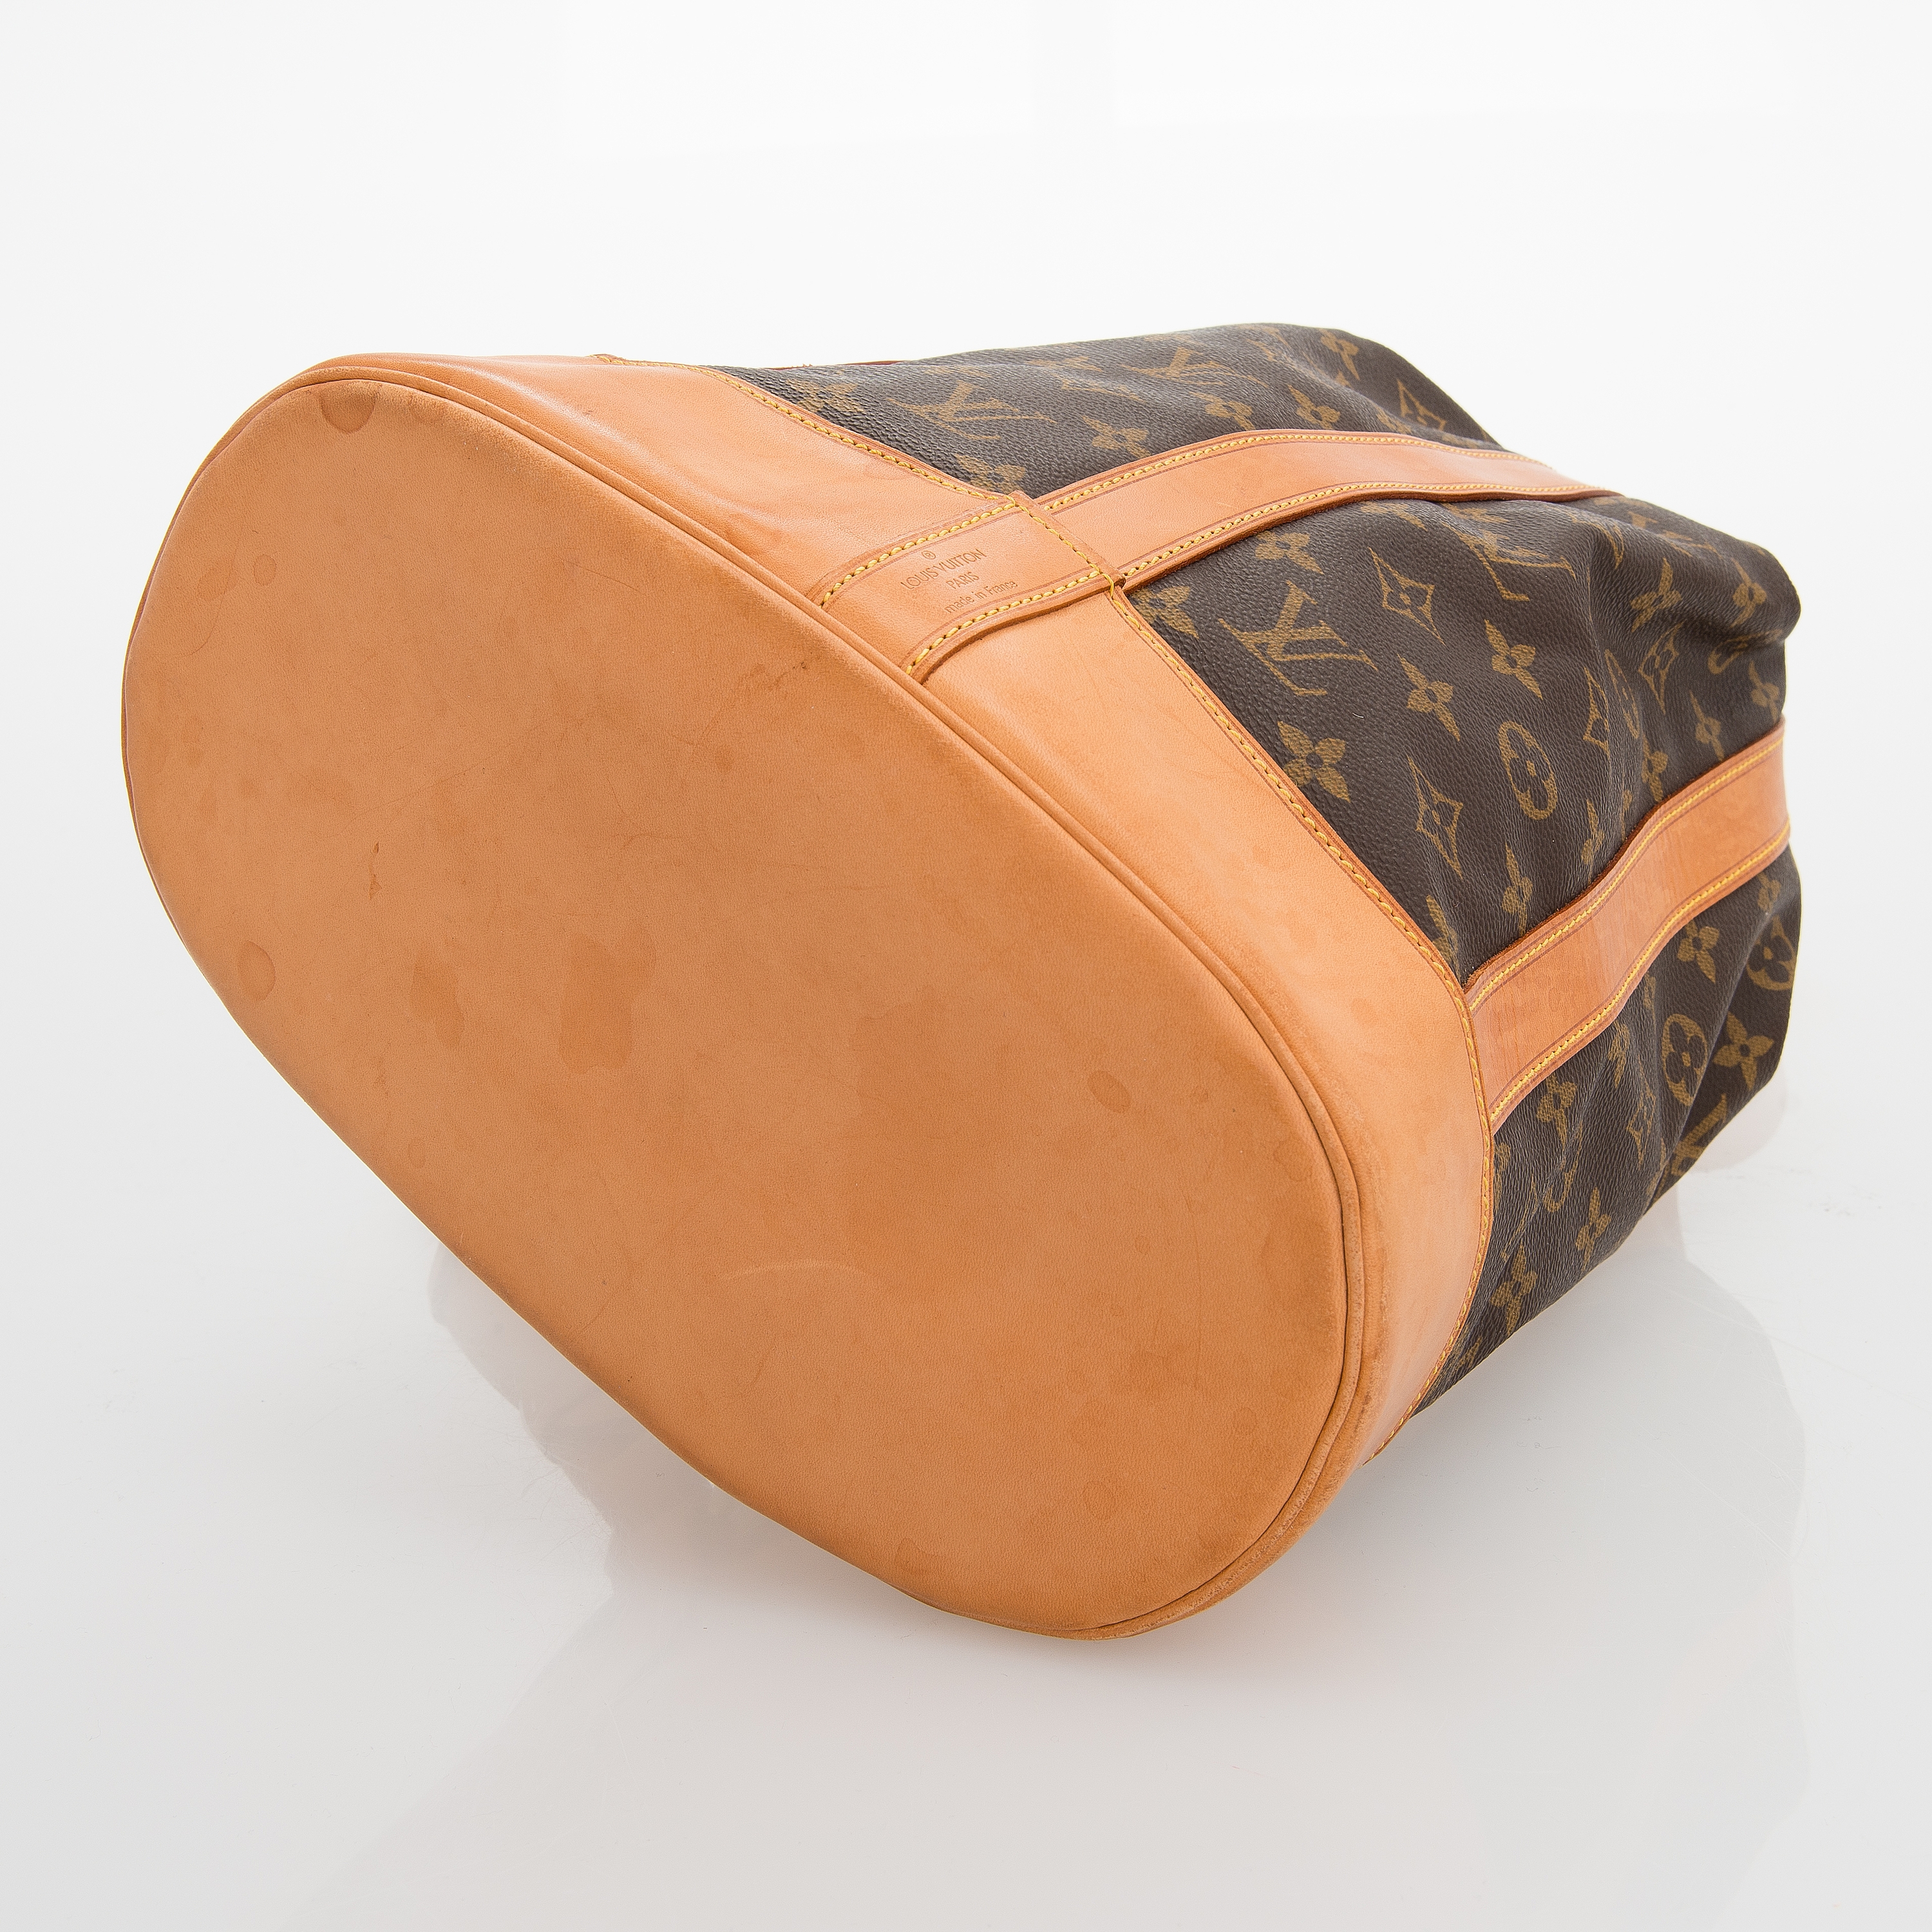 Sold at Auction: Vintage 1970s Louis Vuitton Shoulder Bag